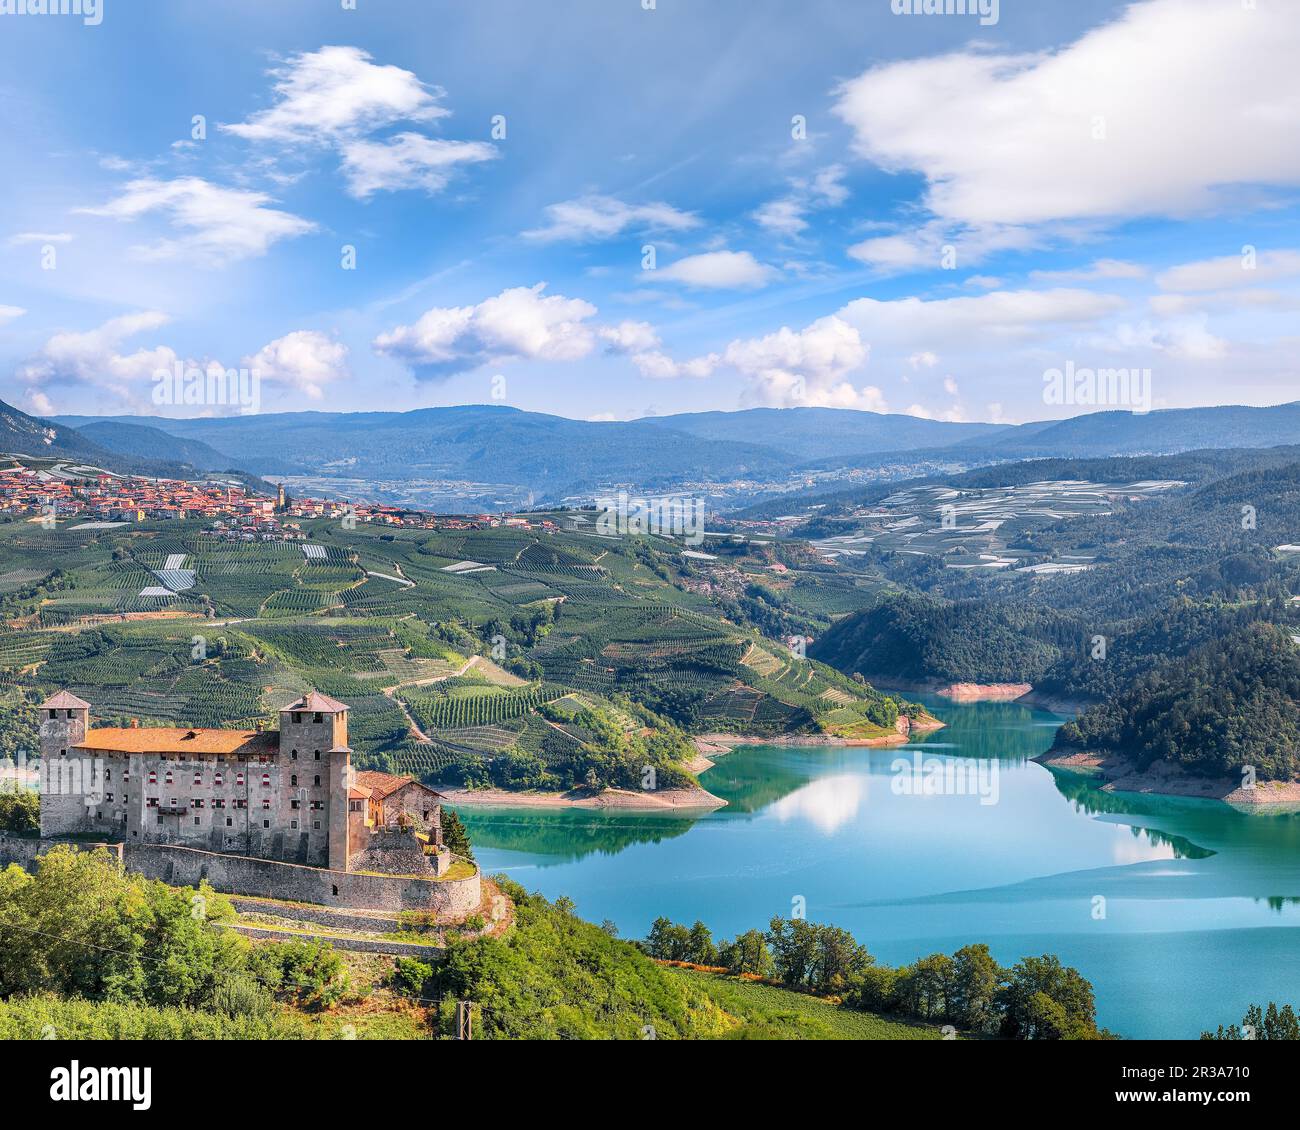 Splendida vista sul castello di Cles, sul lago di Santa Giustina e su numerose piantagioni di mele. Ubicazione: Cles, Trentino-Alto Adige, Italia, Europa Foto Stock